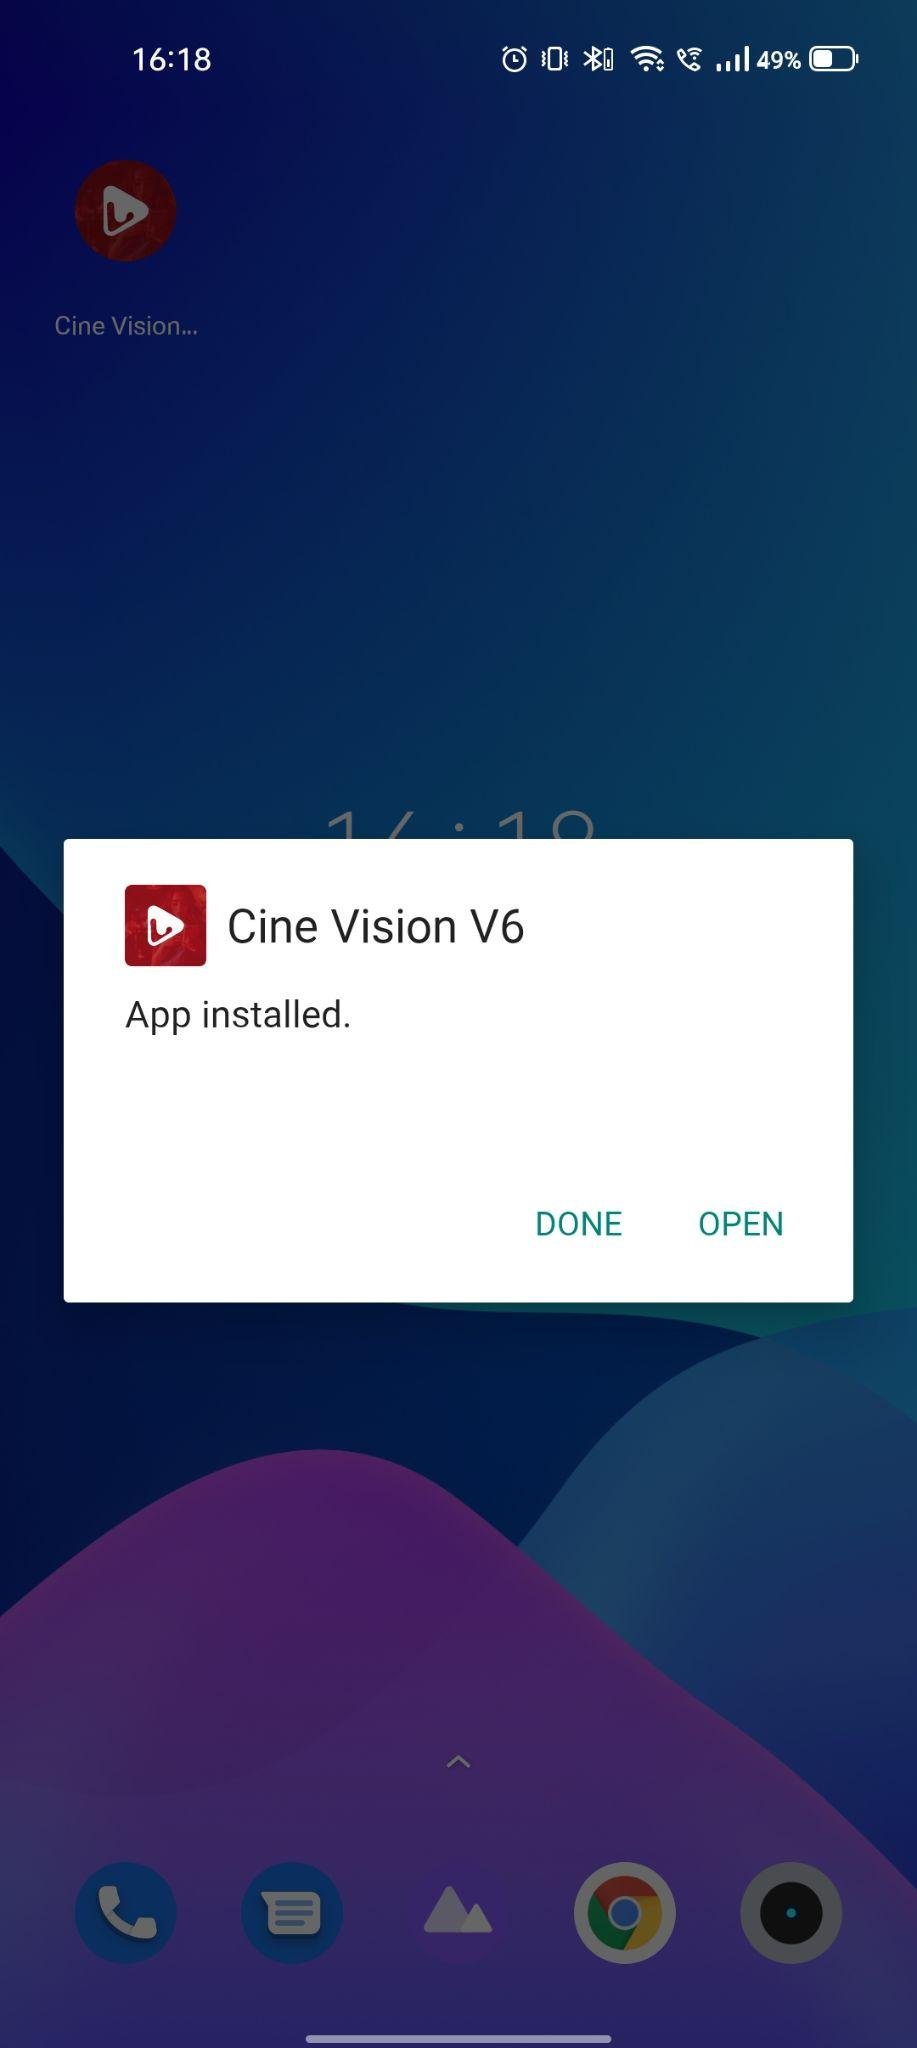 cine vision v6 apk installed